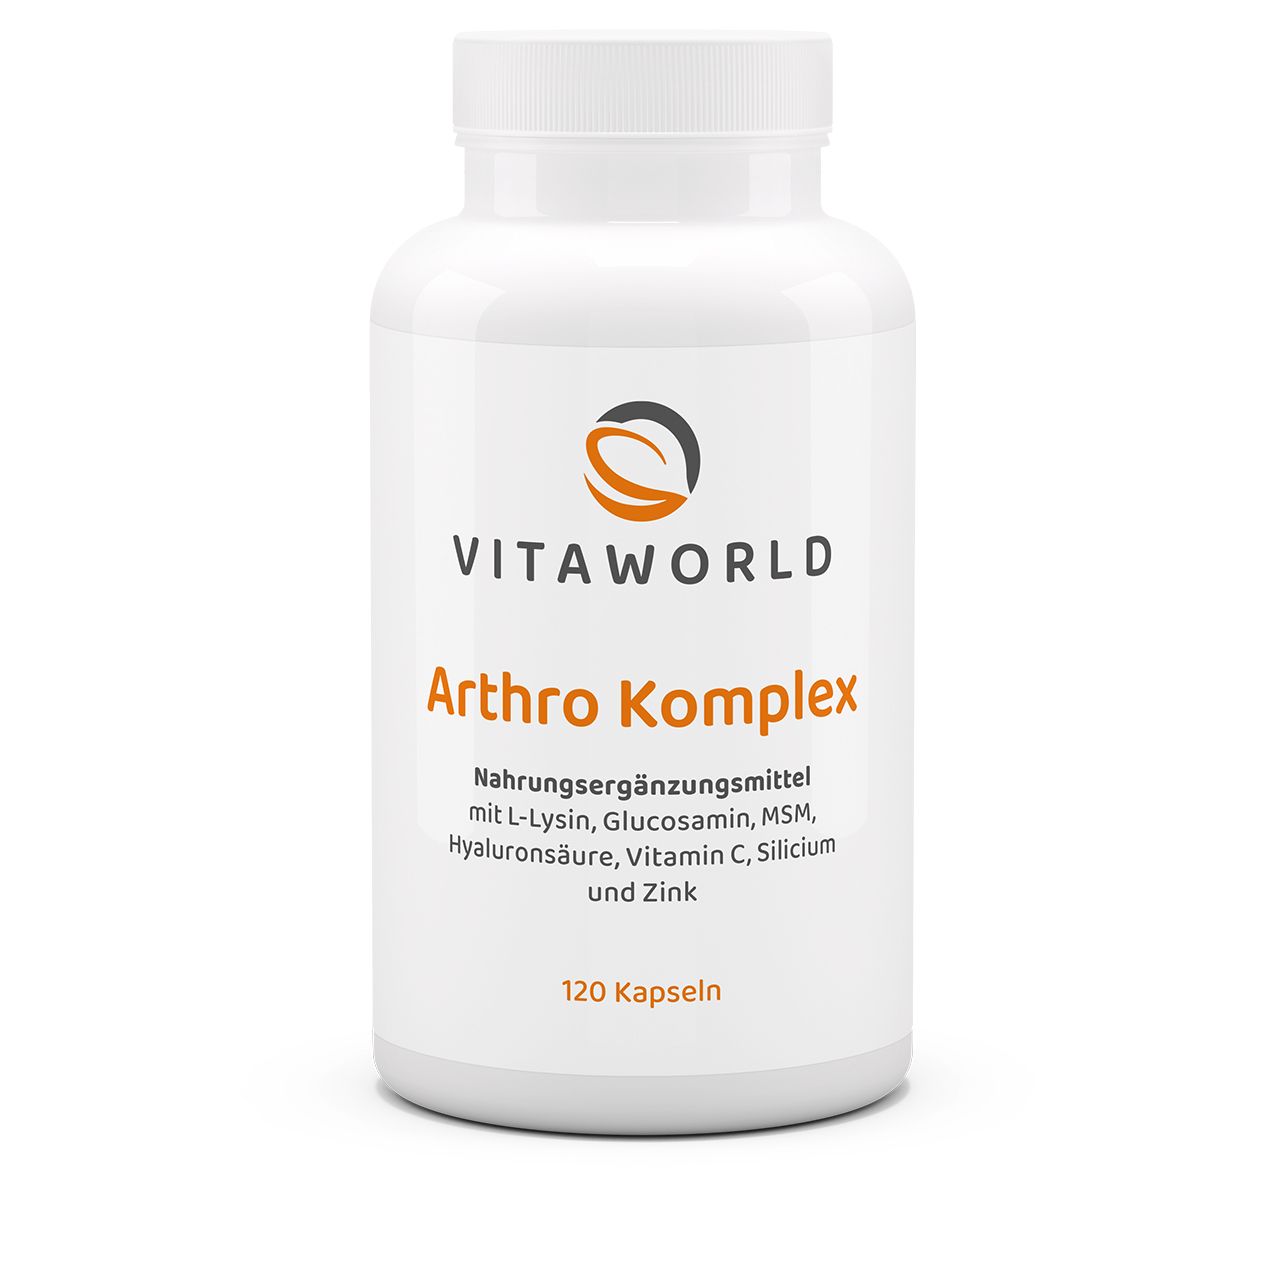 Vita World Arthro Komplex | 120 Kapseln | Vegane Unterstützung für Knochen & Gelenke | Mit Pflanzlichem Glucosamin & MSM